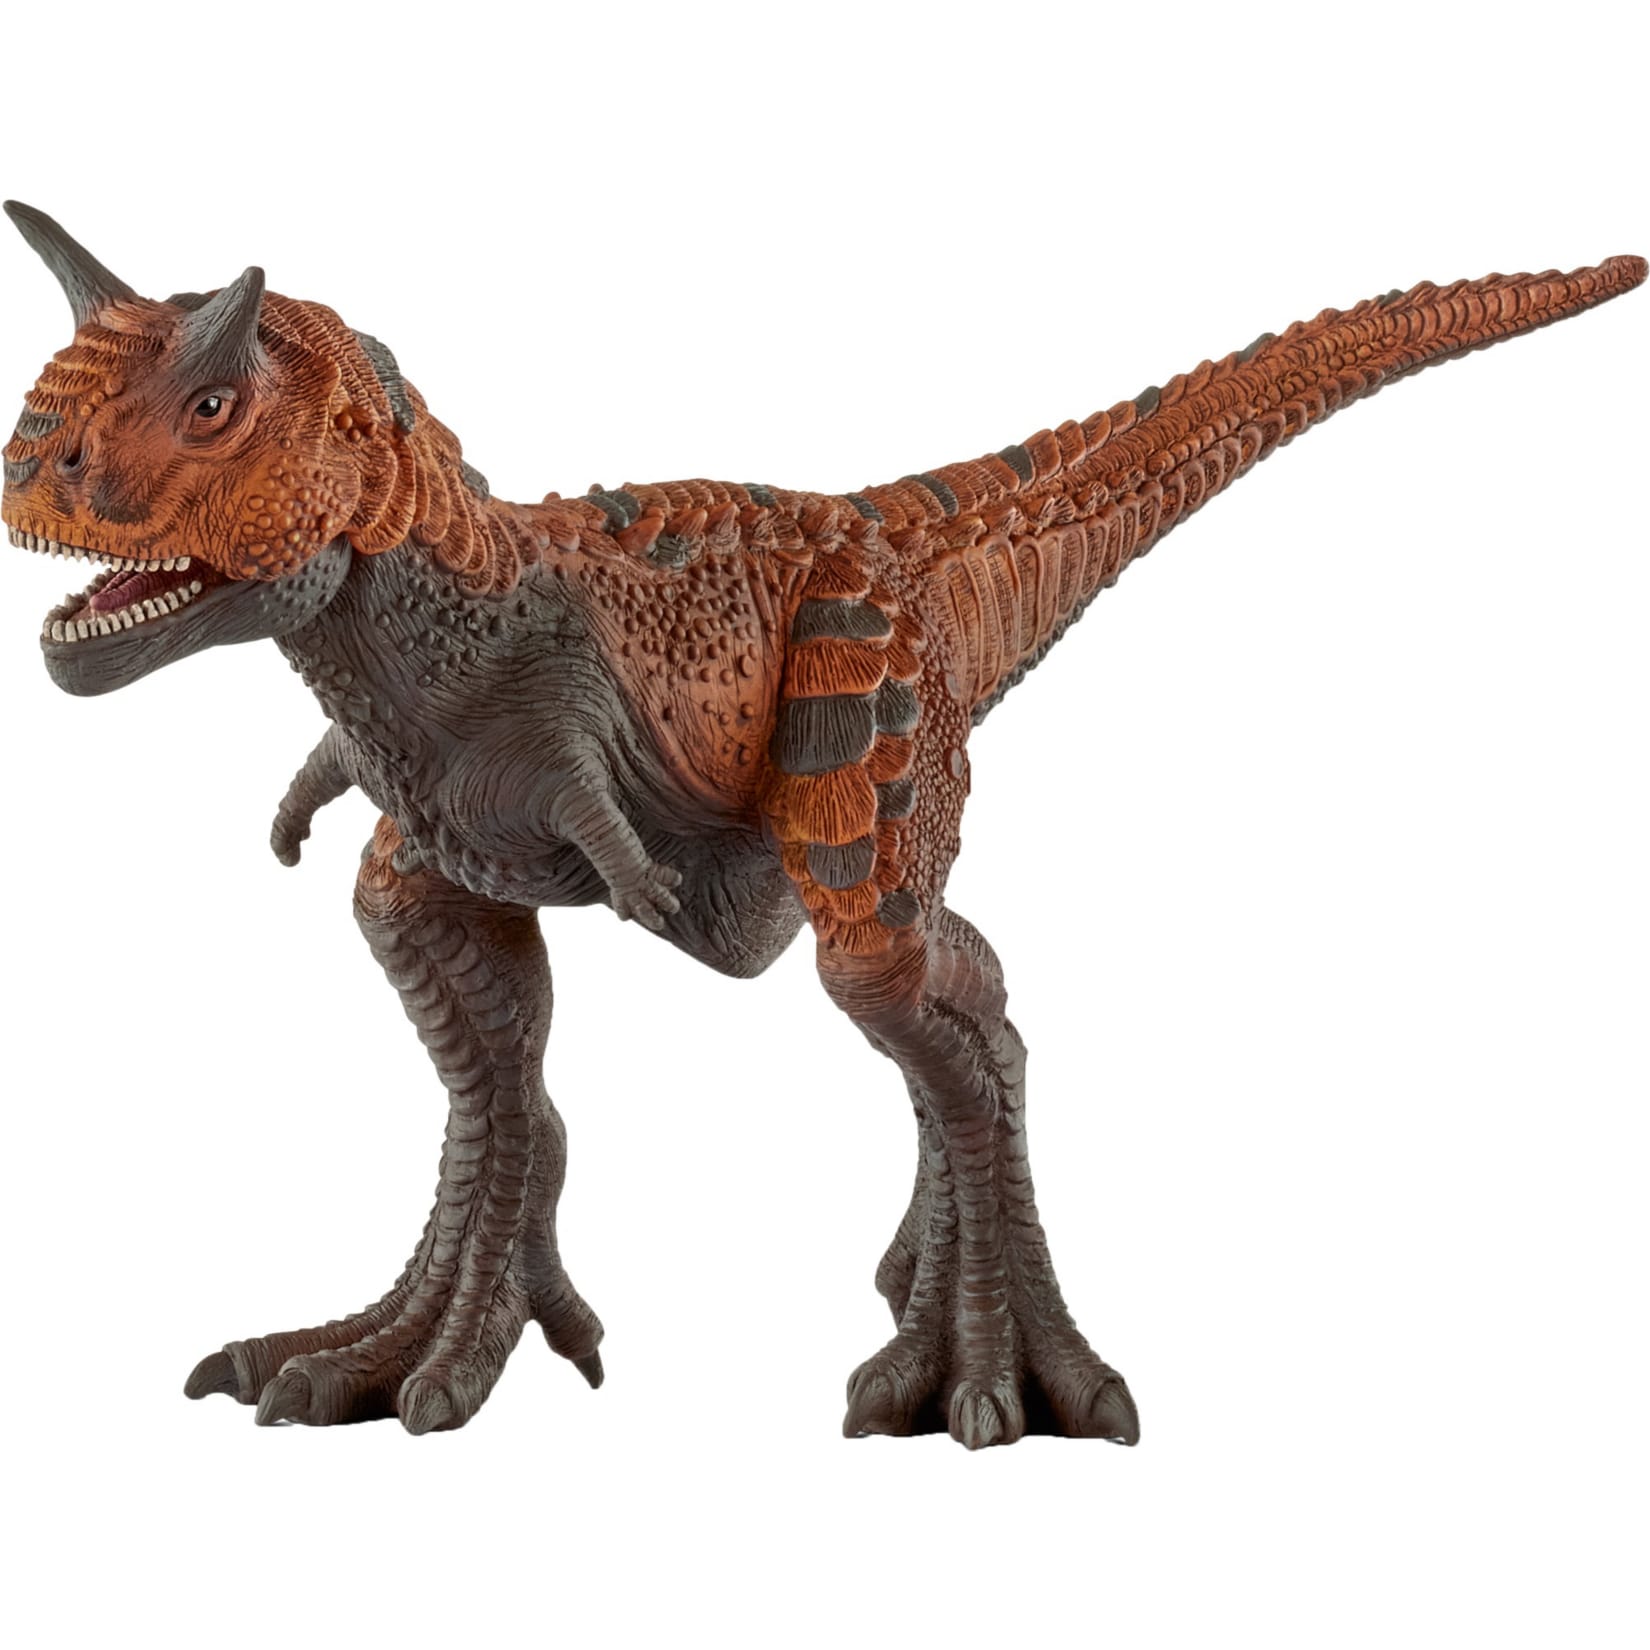 Schleich Spielfigur Dinosaurs Carnotaurus